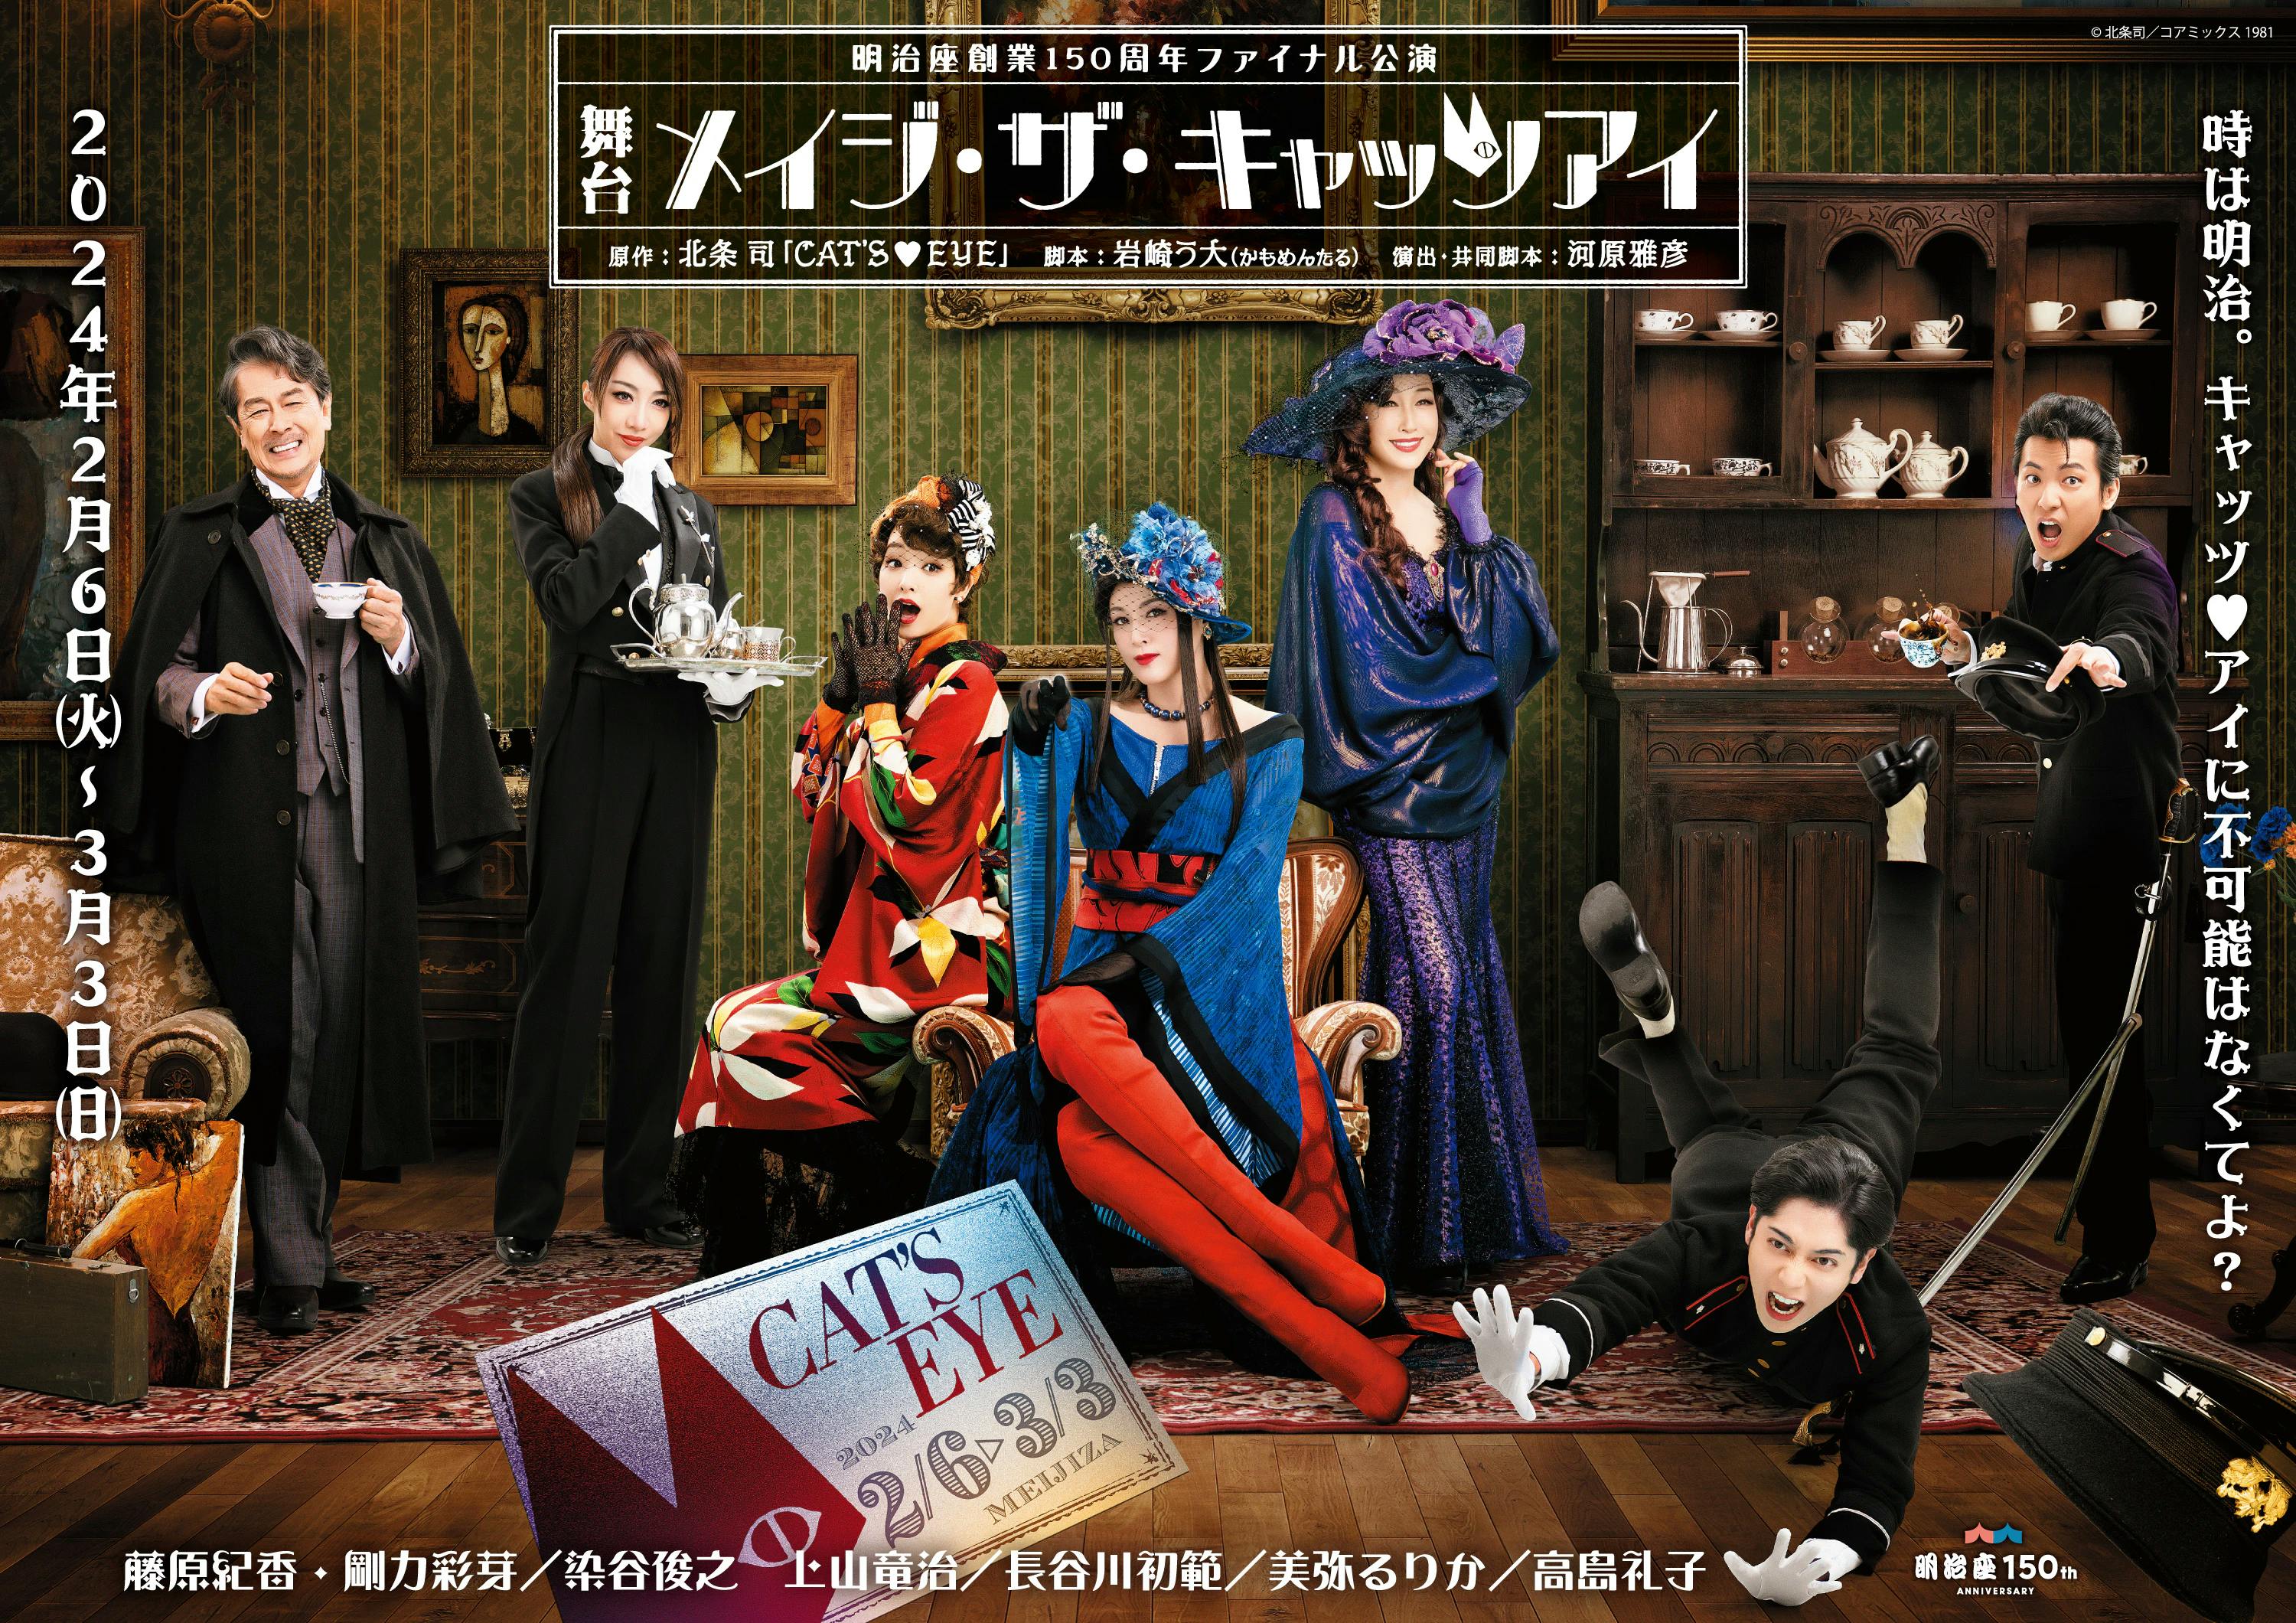 Le deuxième visuel des 7 acteurs principaux de la pièce de théâtre "Mage the Cat's Eye" avec Norika Fujiwara, Ayame Goriki et Reiko Takashima est sorti !